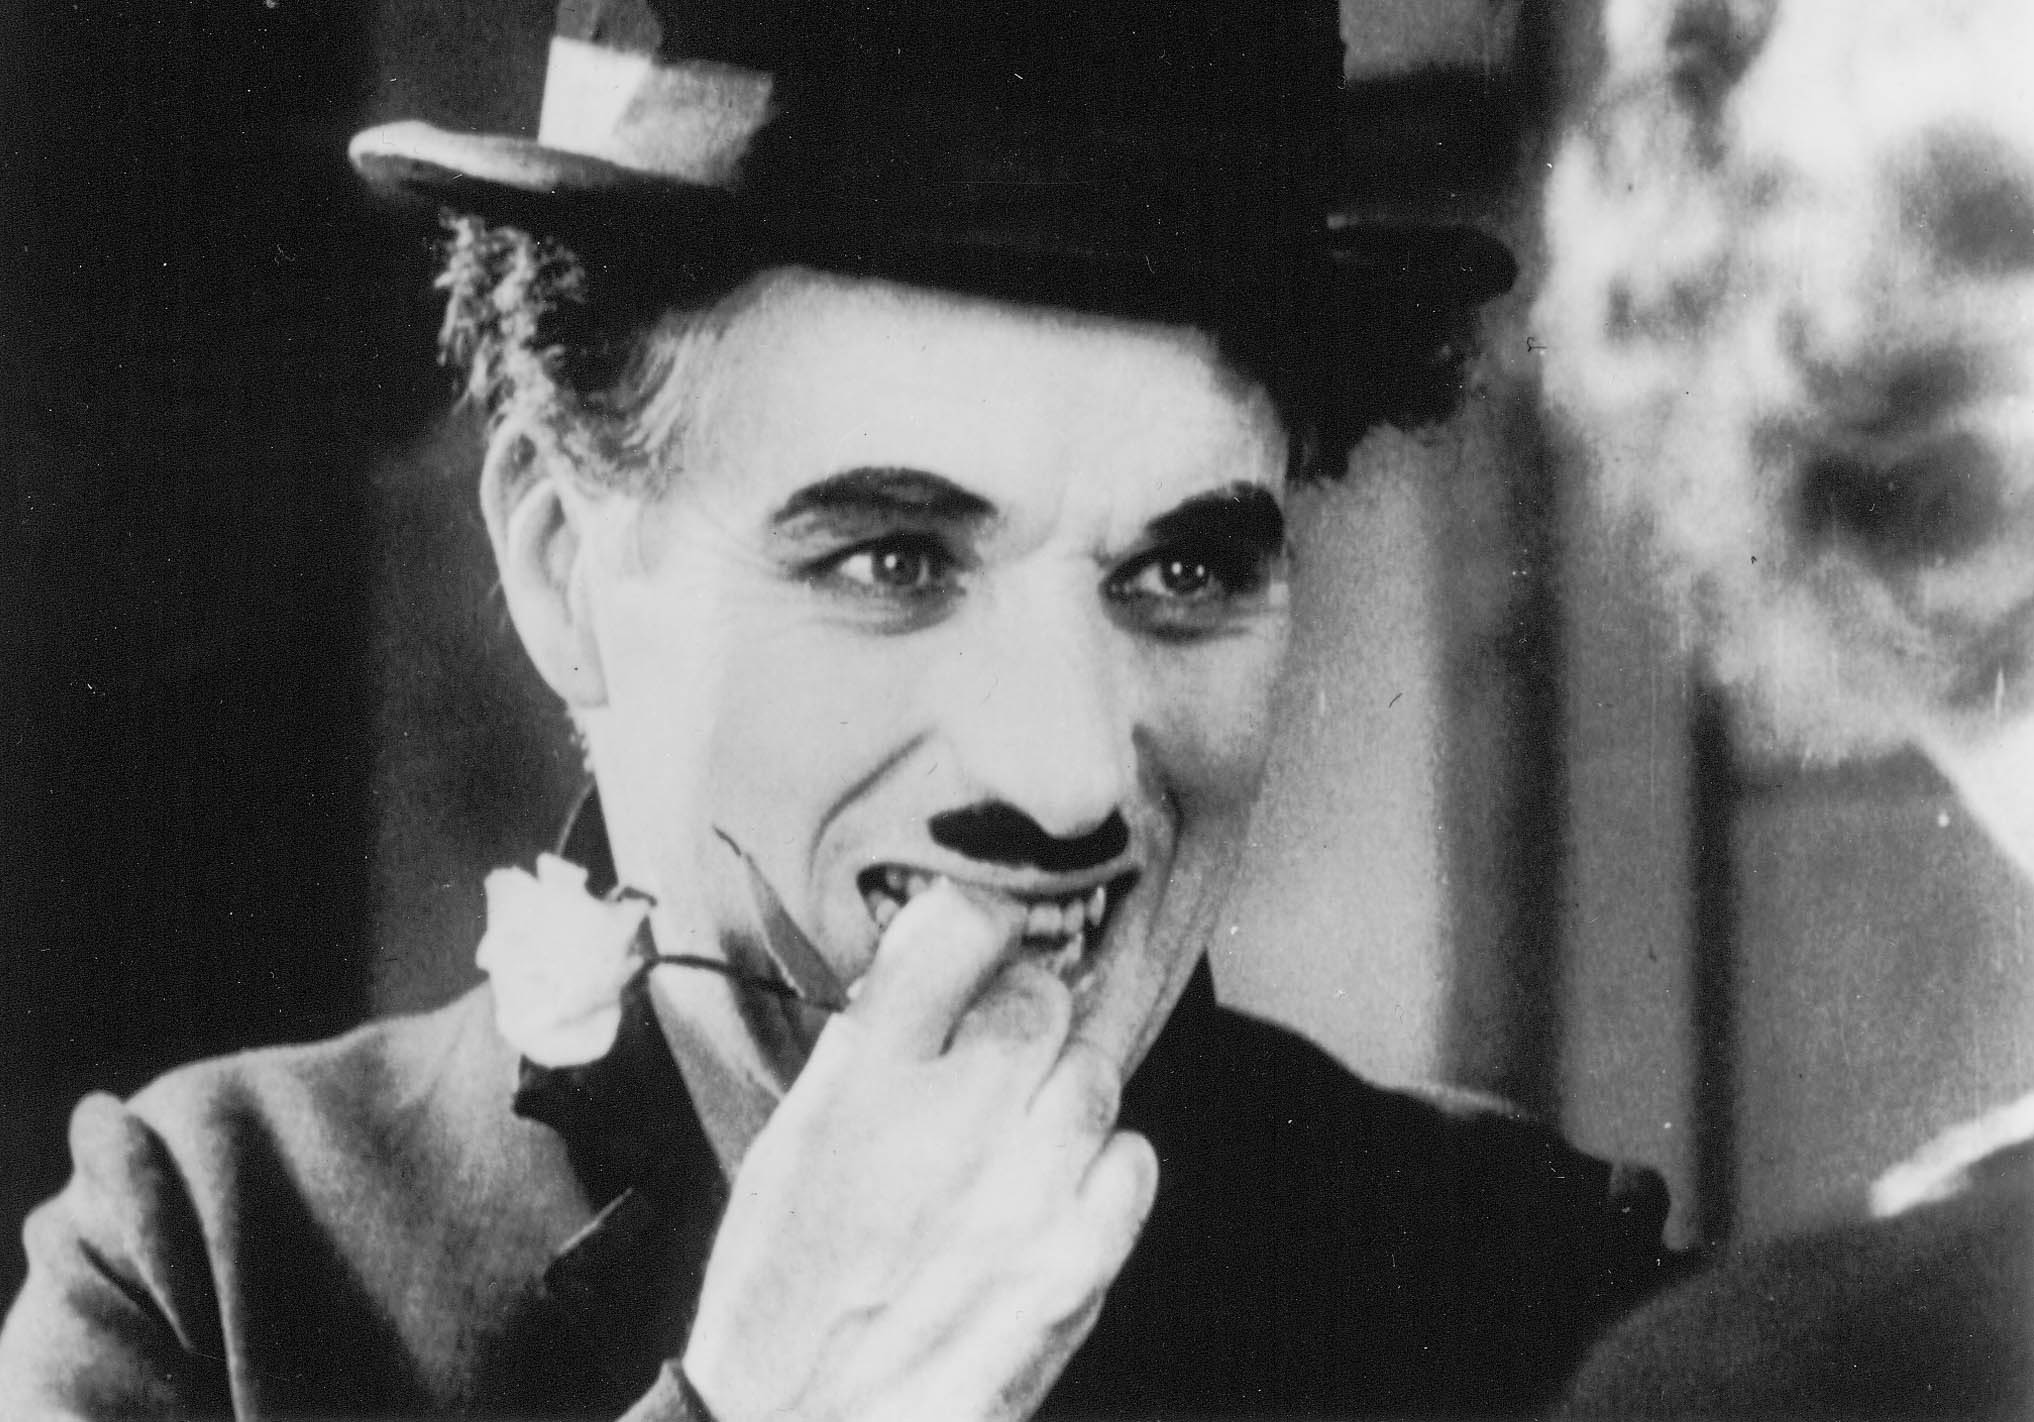 ROY EXPORT S.A.S tivo. A canção não foi originalmente creditada, o que desencadeou um processo judicial entre Padilla e Chaplin.